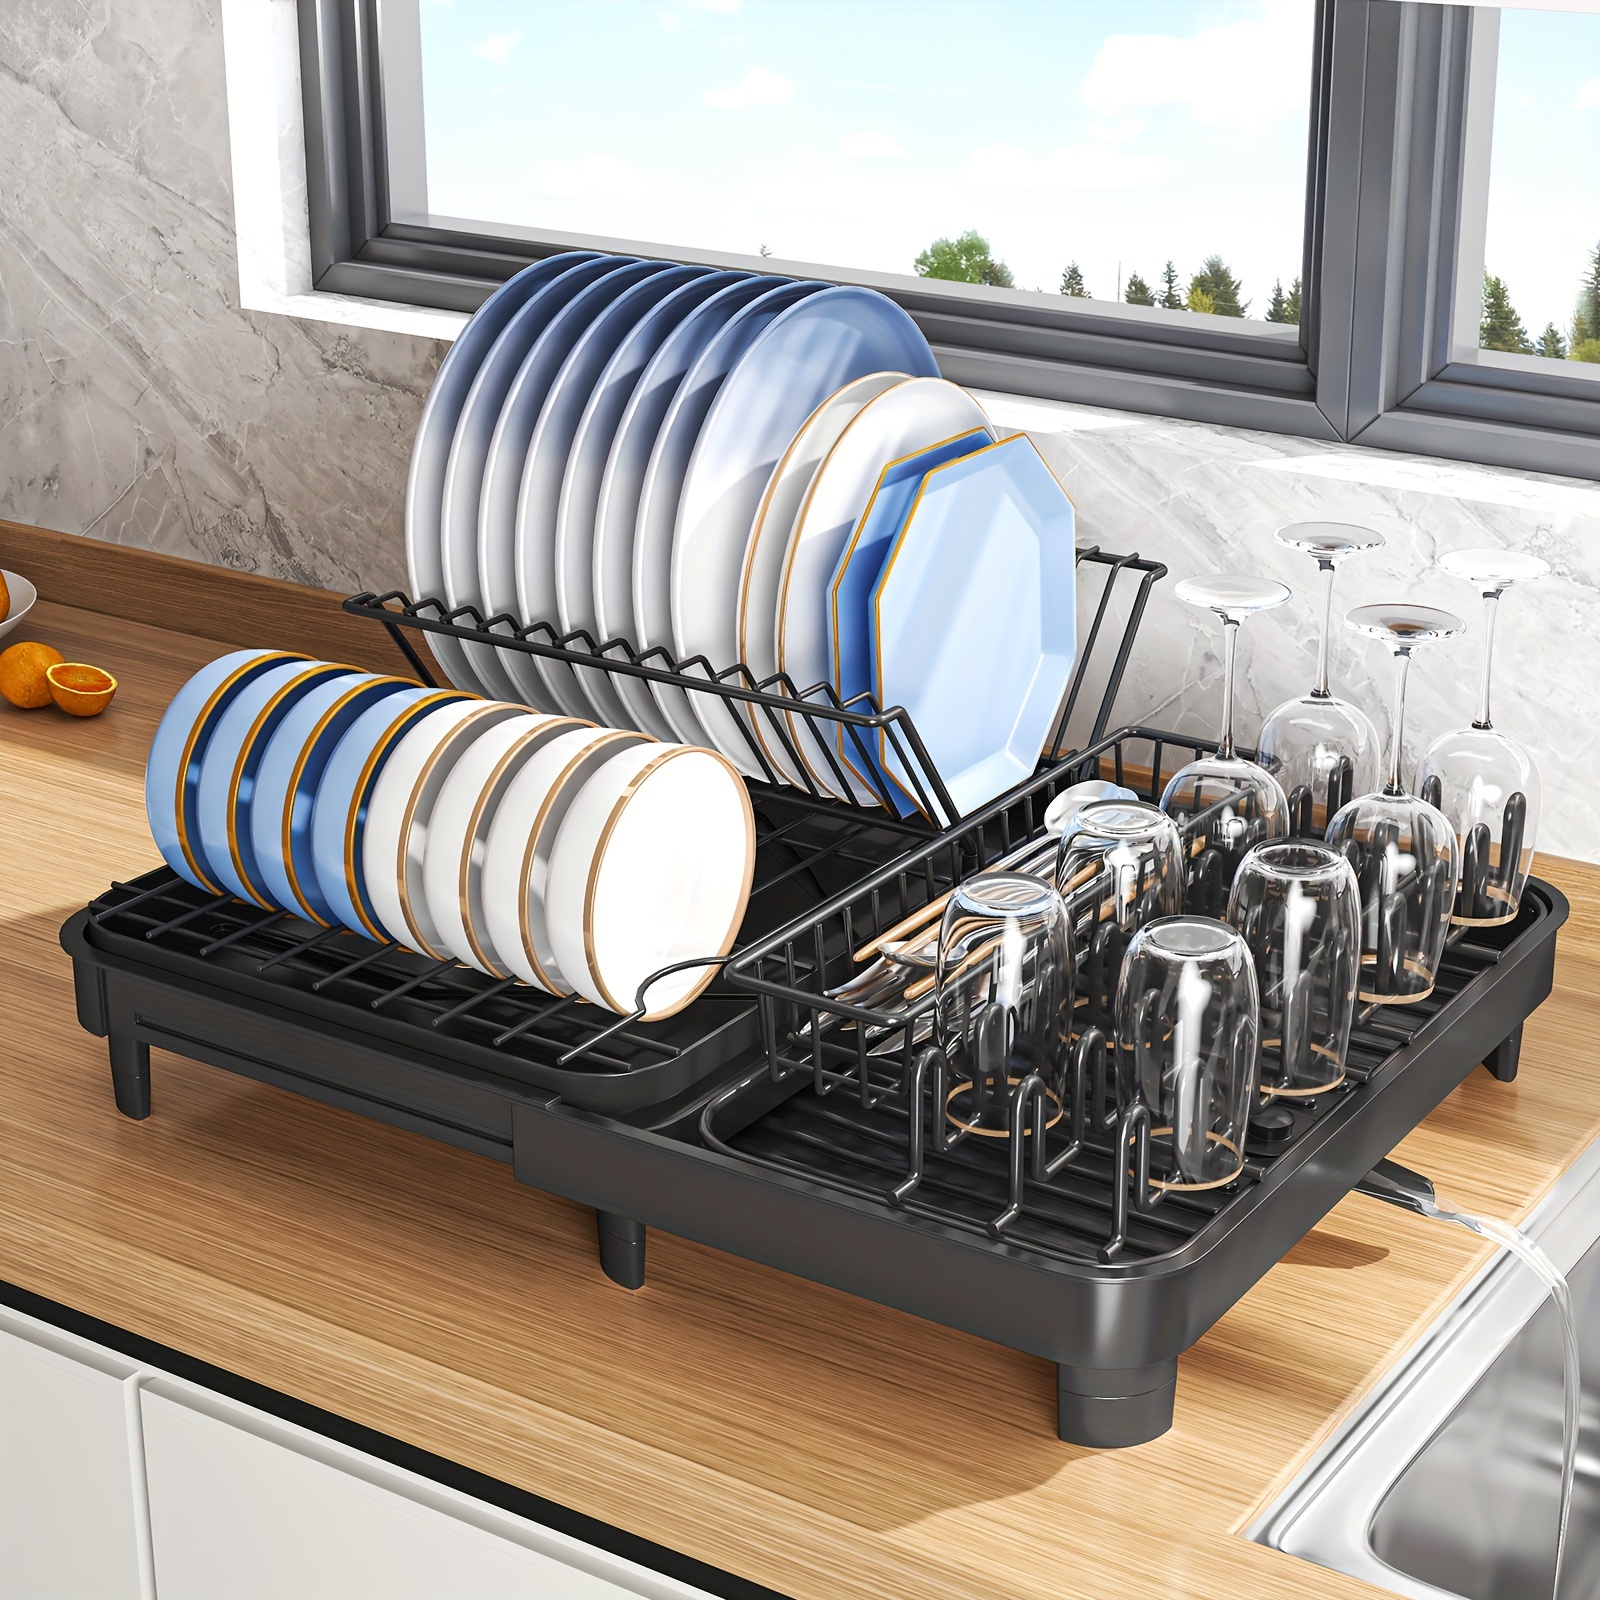 Escurridor de platos sobre el fregadero con tapa para colocar sobre el  fregadero, mantiene el fregadero de cocina organizado y ahorra espacio para